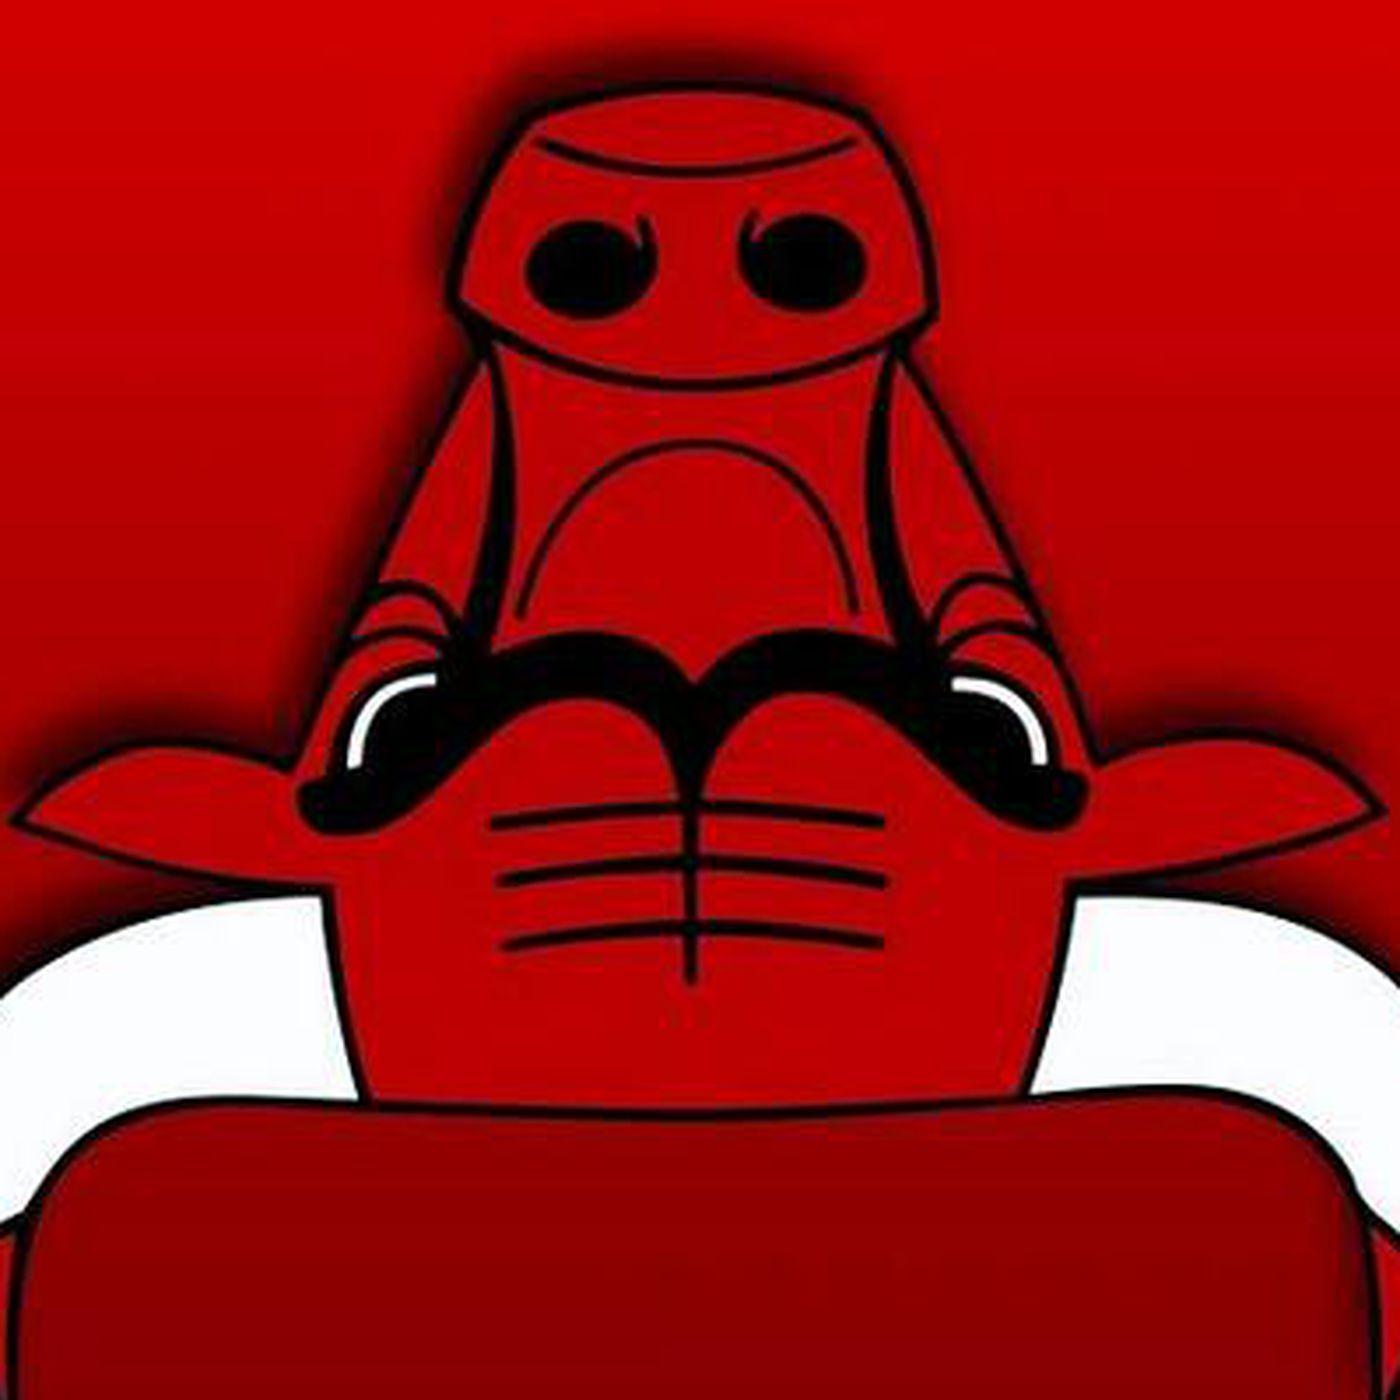 Bulls Logo - Turn the Bulls logo upside down, get a robot reading a book